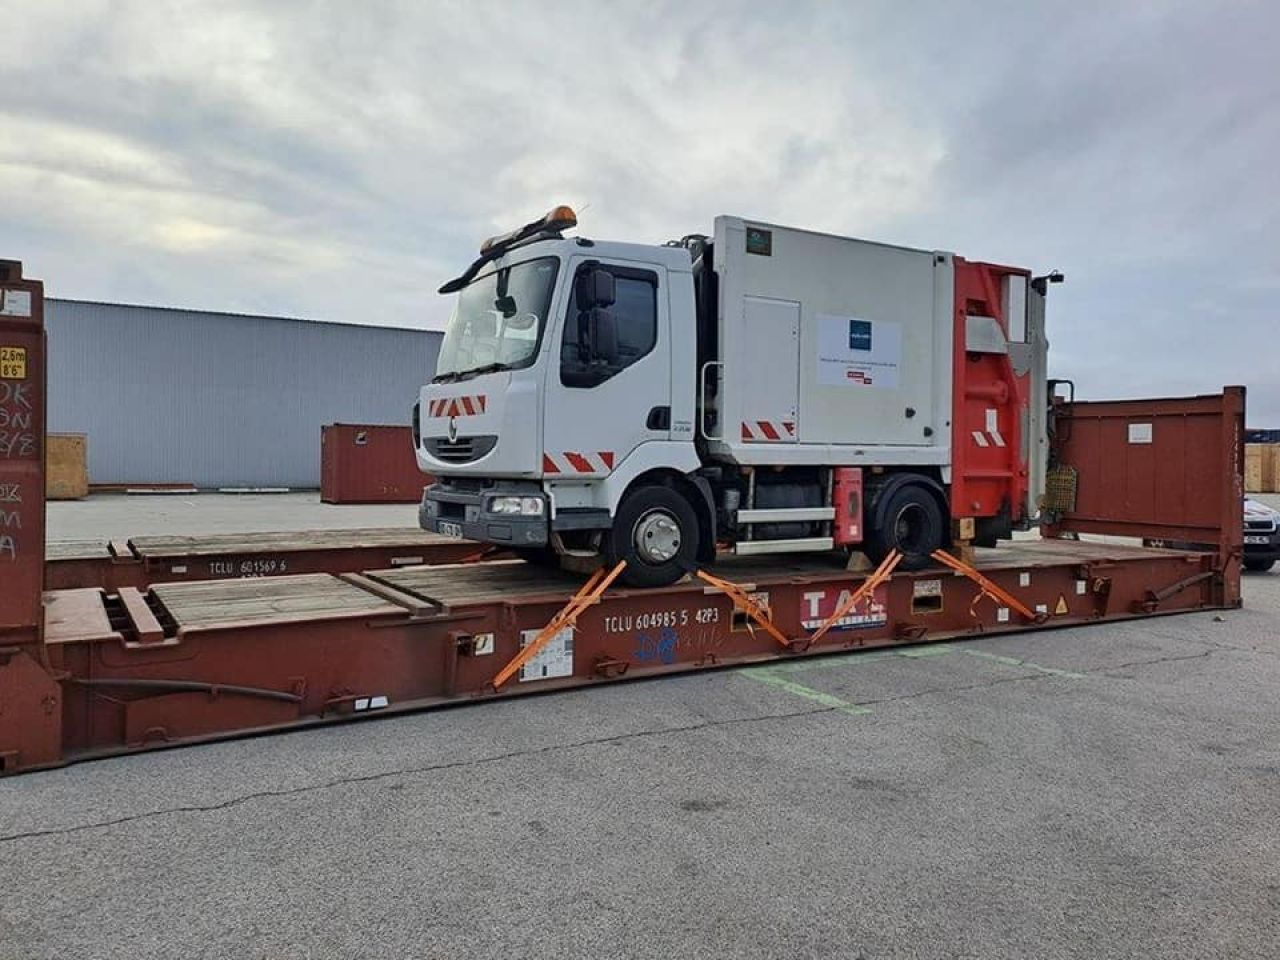 Ֆրանսիայի Հանրապետության Վո-ան-Վլեն քաղաքի կողմից նվիրատվության կարգով Արթիկ համայնքին հանձնված <<Ռենո միդլում>> մակնիշի աղբատար ավտոմեքենան տեղ է հասել